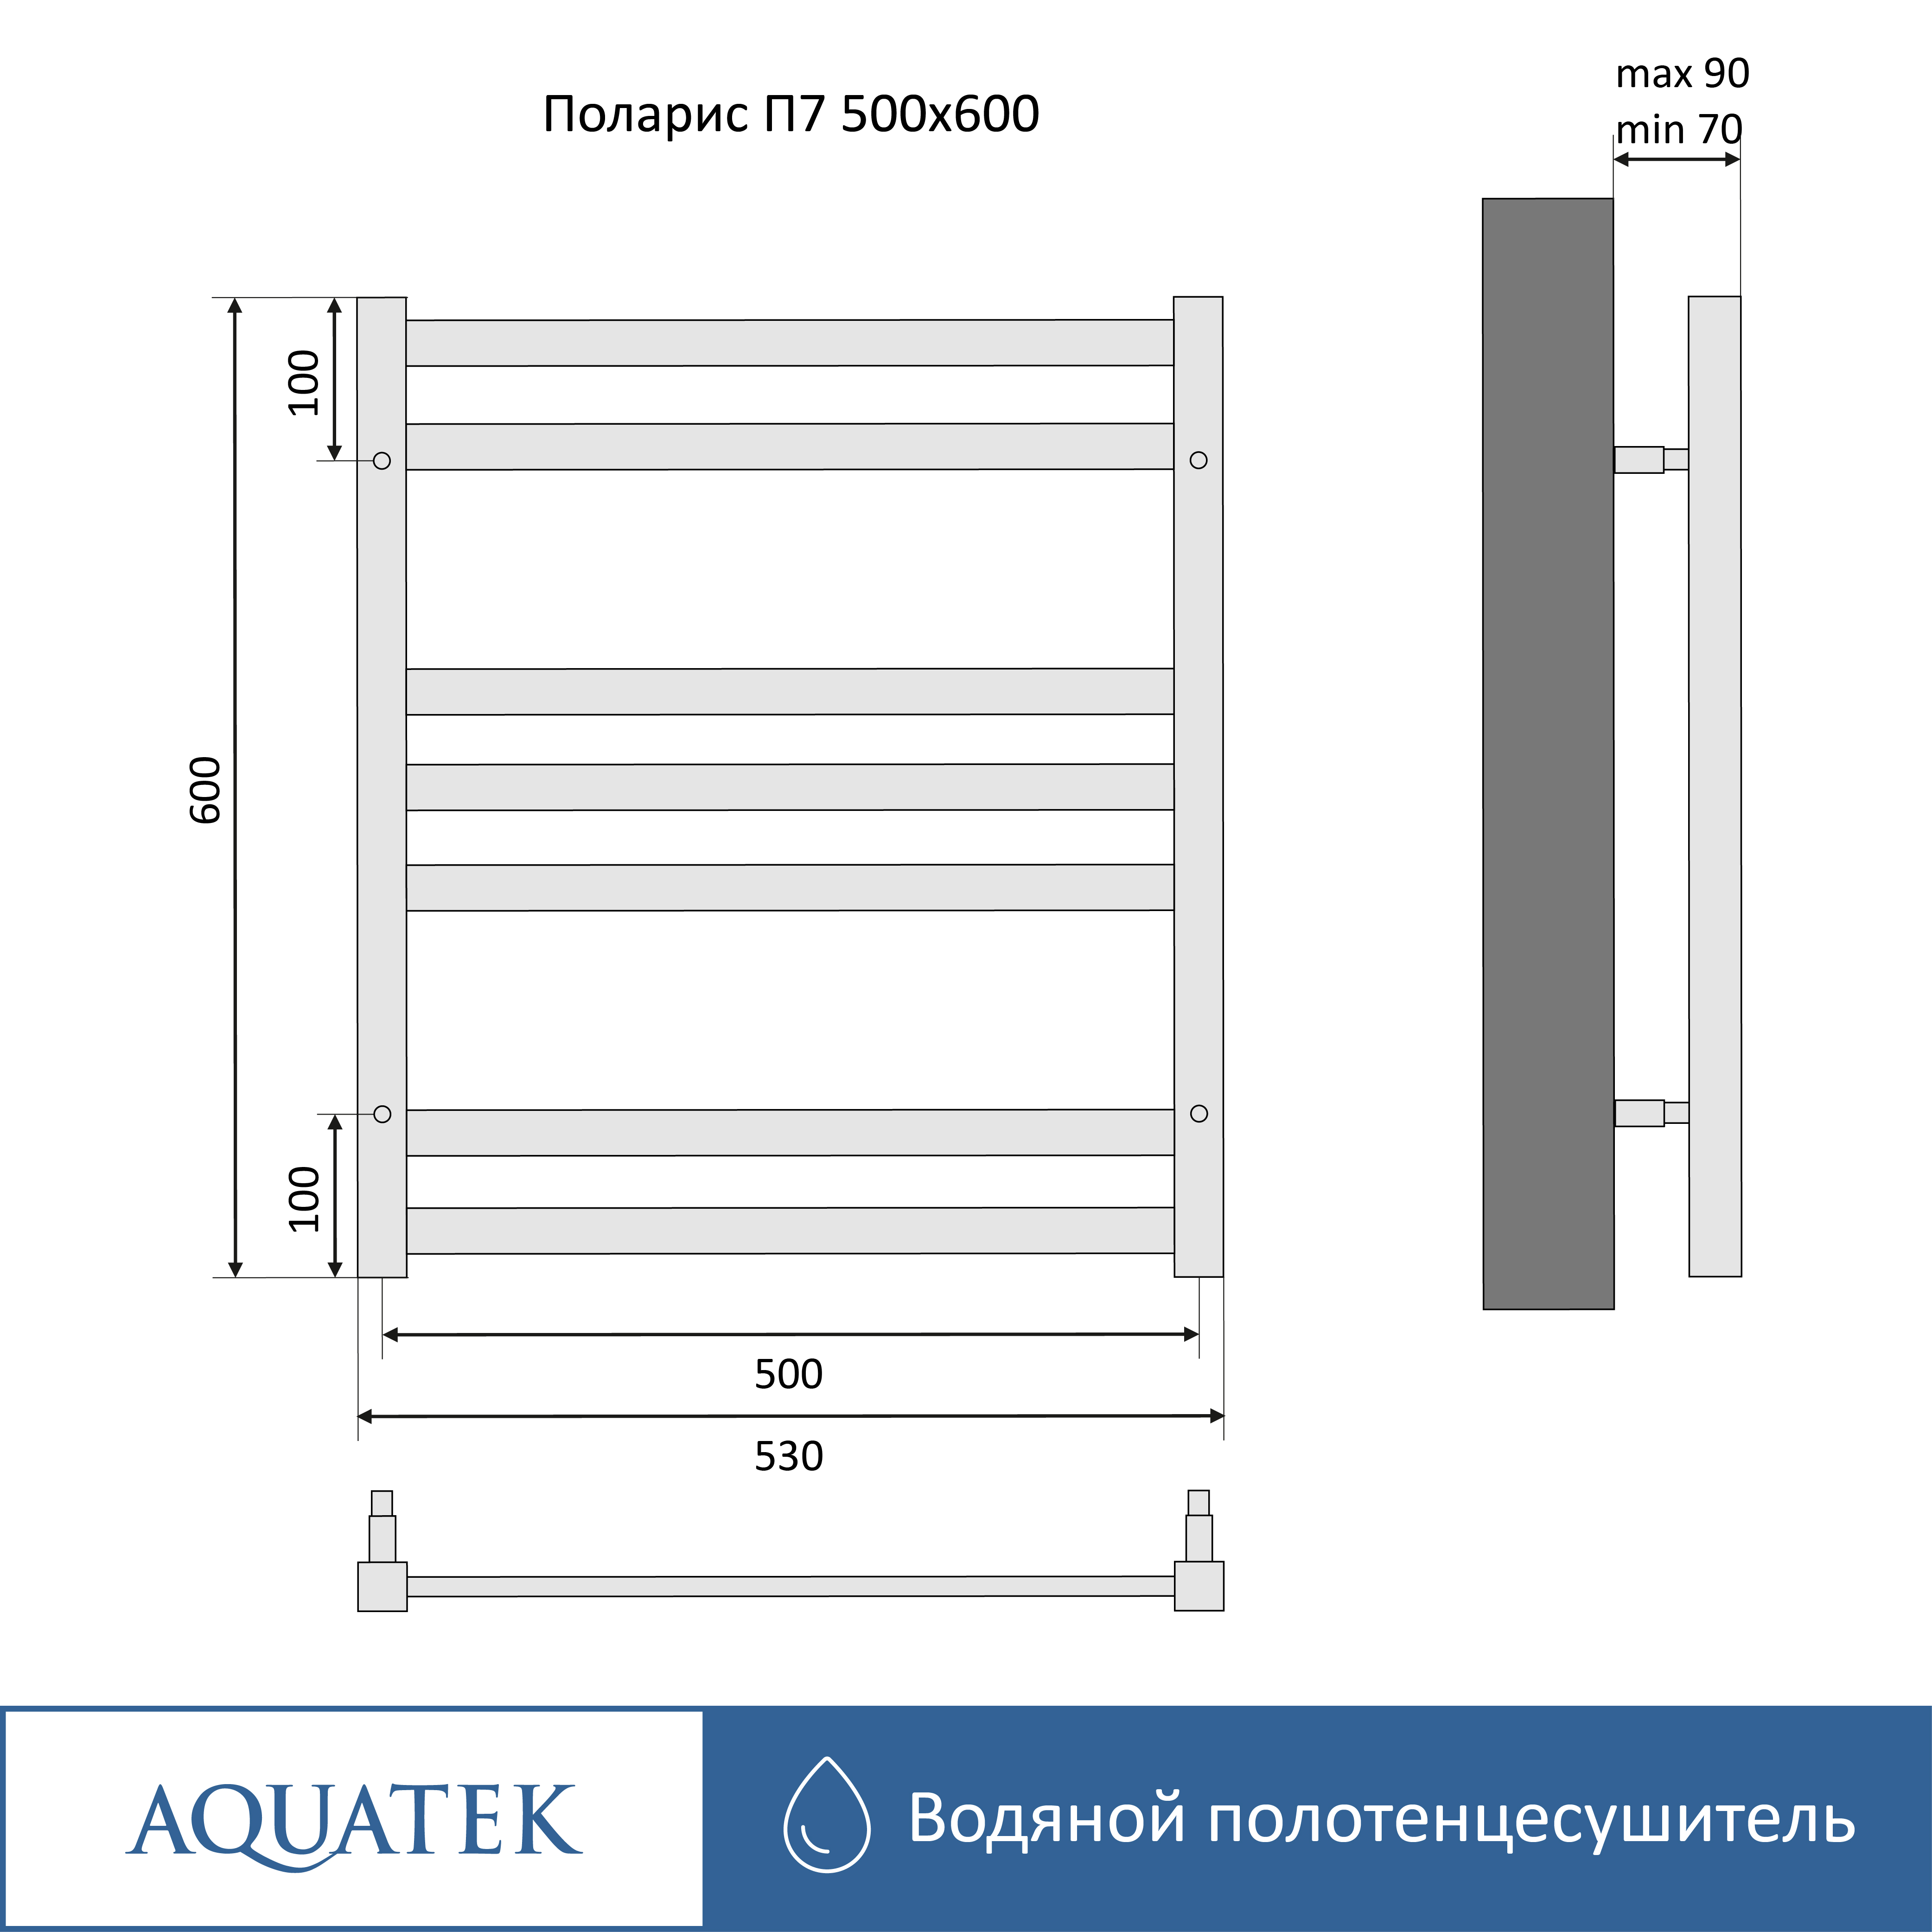 Полотенцесушитель водяной Aquatek Поларис П7 500х600, черный муар AQ KO0760BL - 15